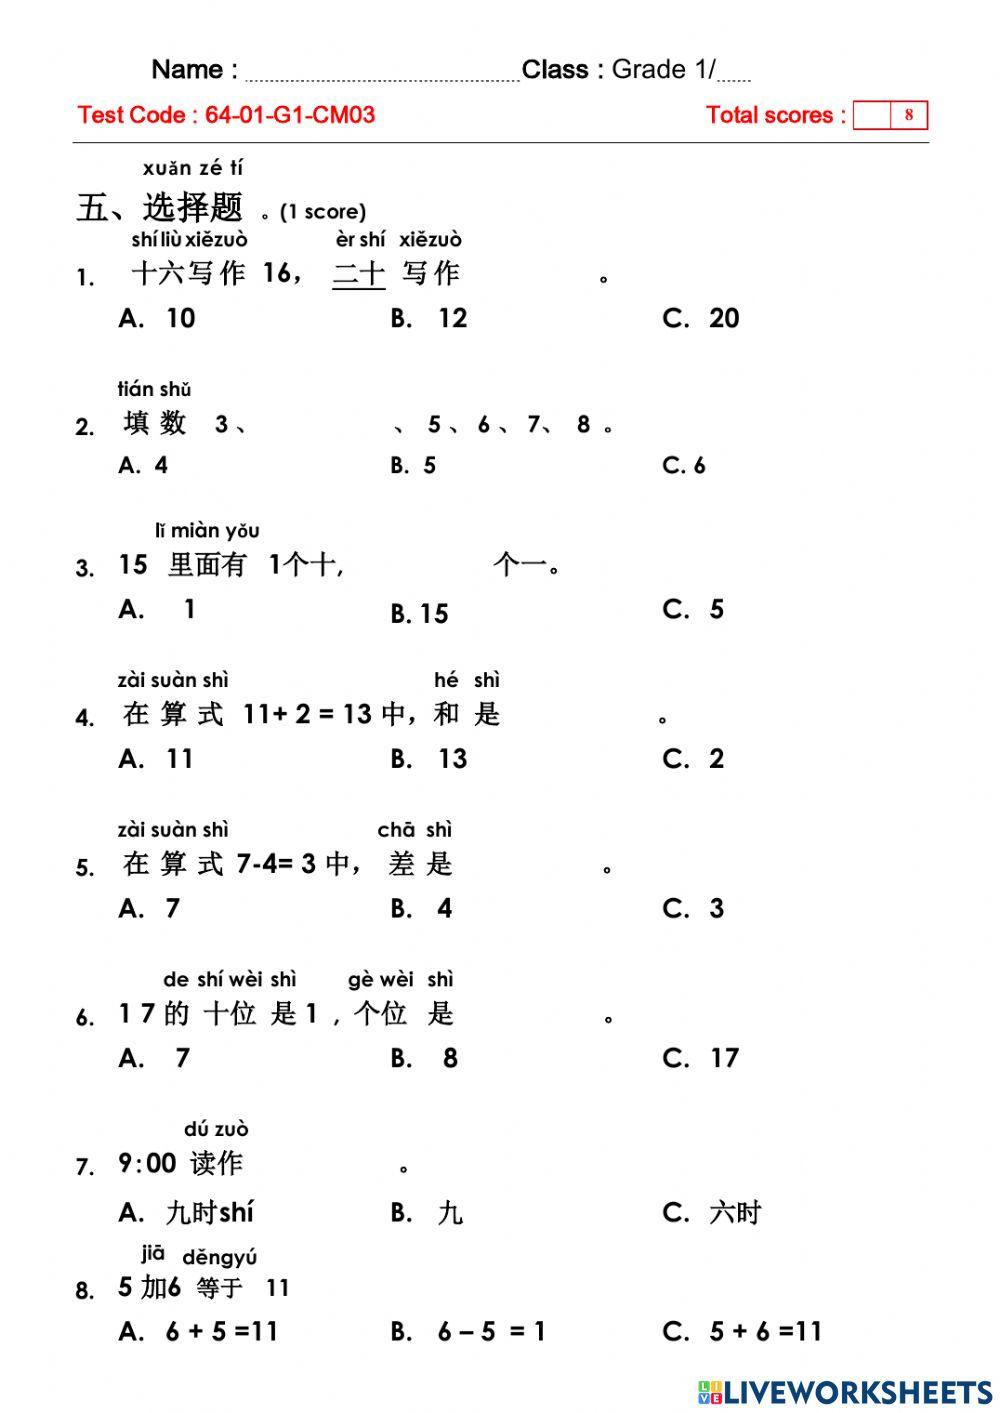 2101 - G.1 - Test - Chinese (Mathematics) 2-3